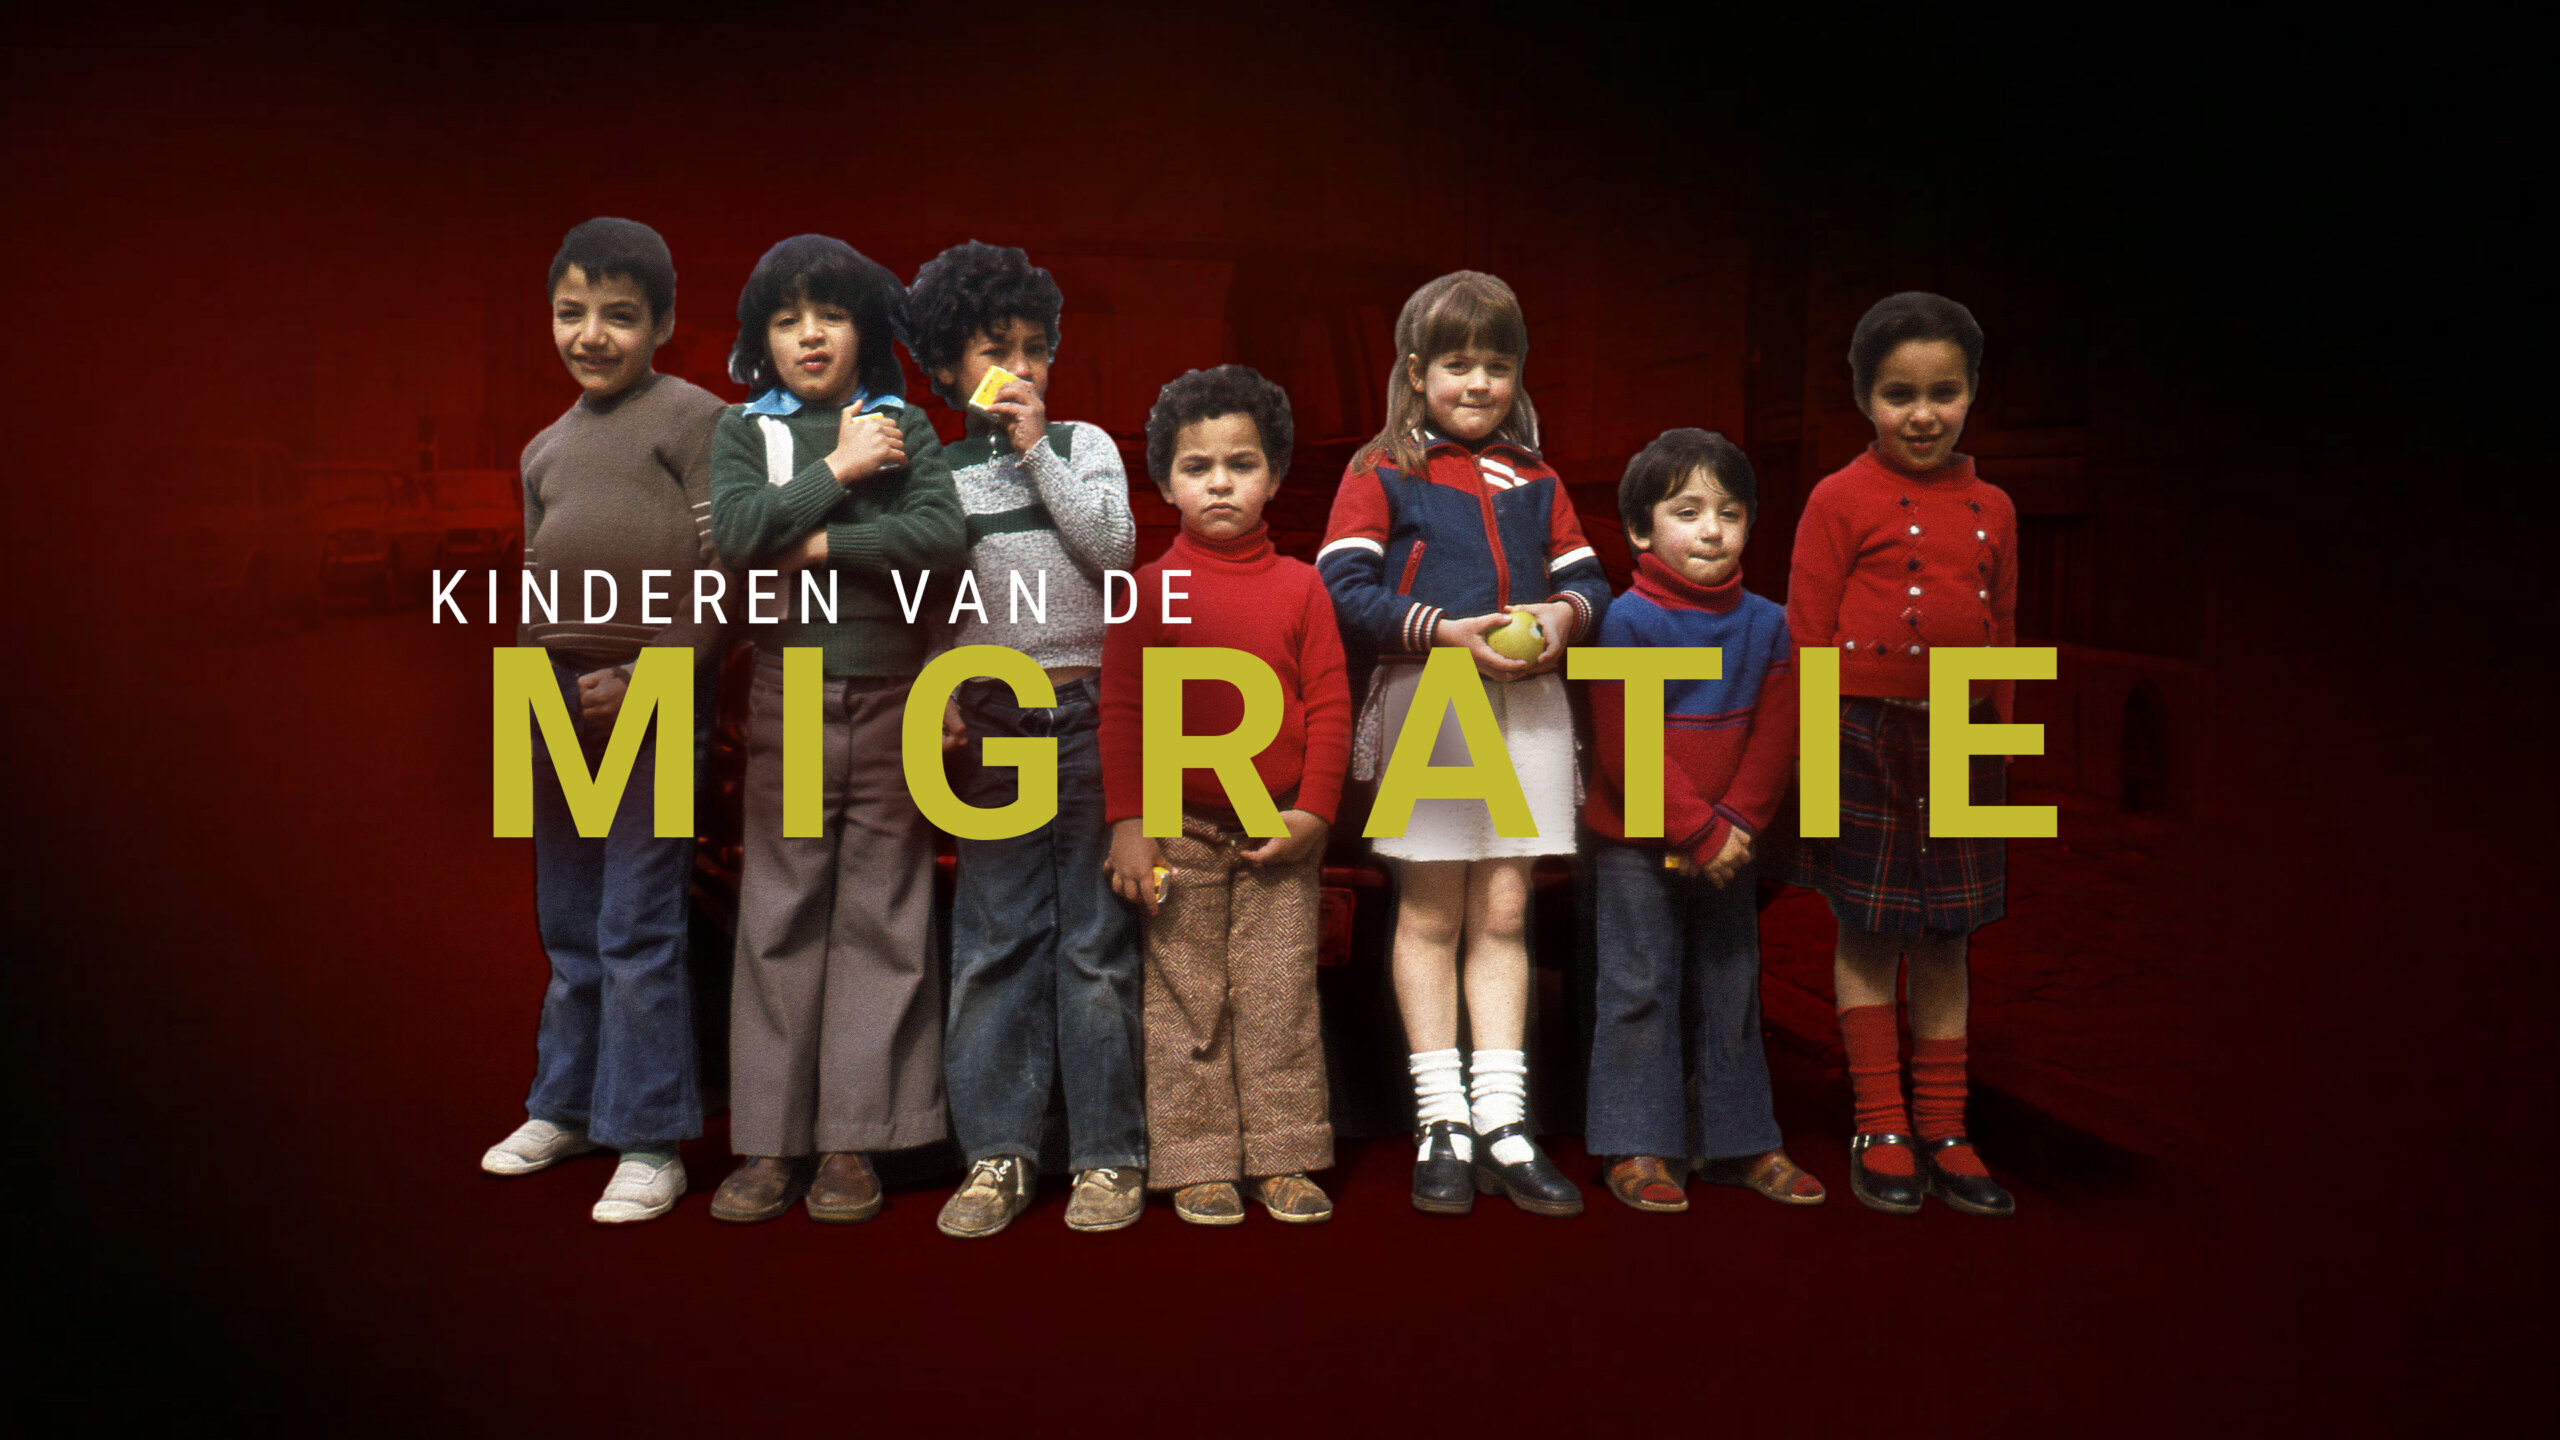 Kinderen van de migratie